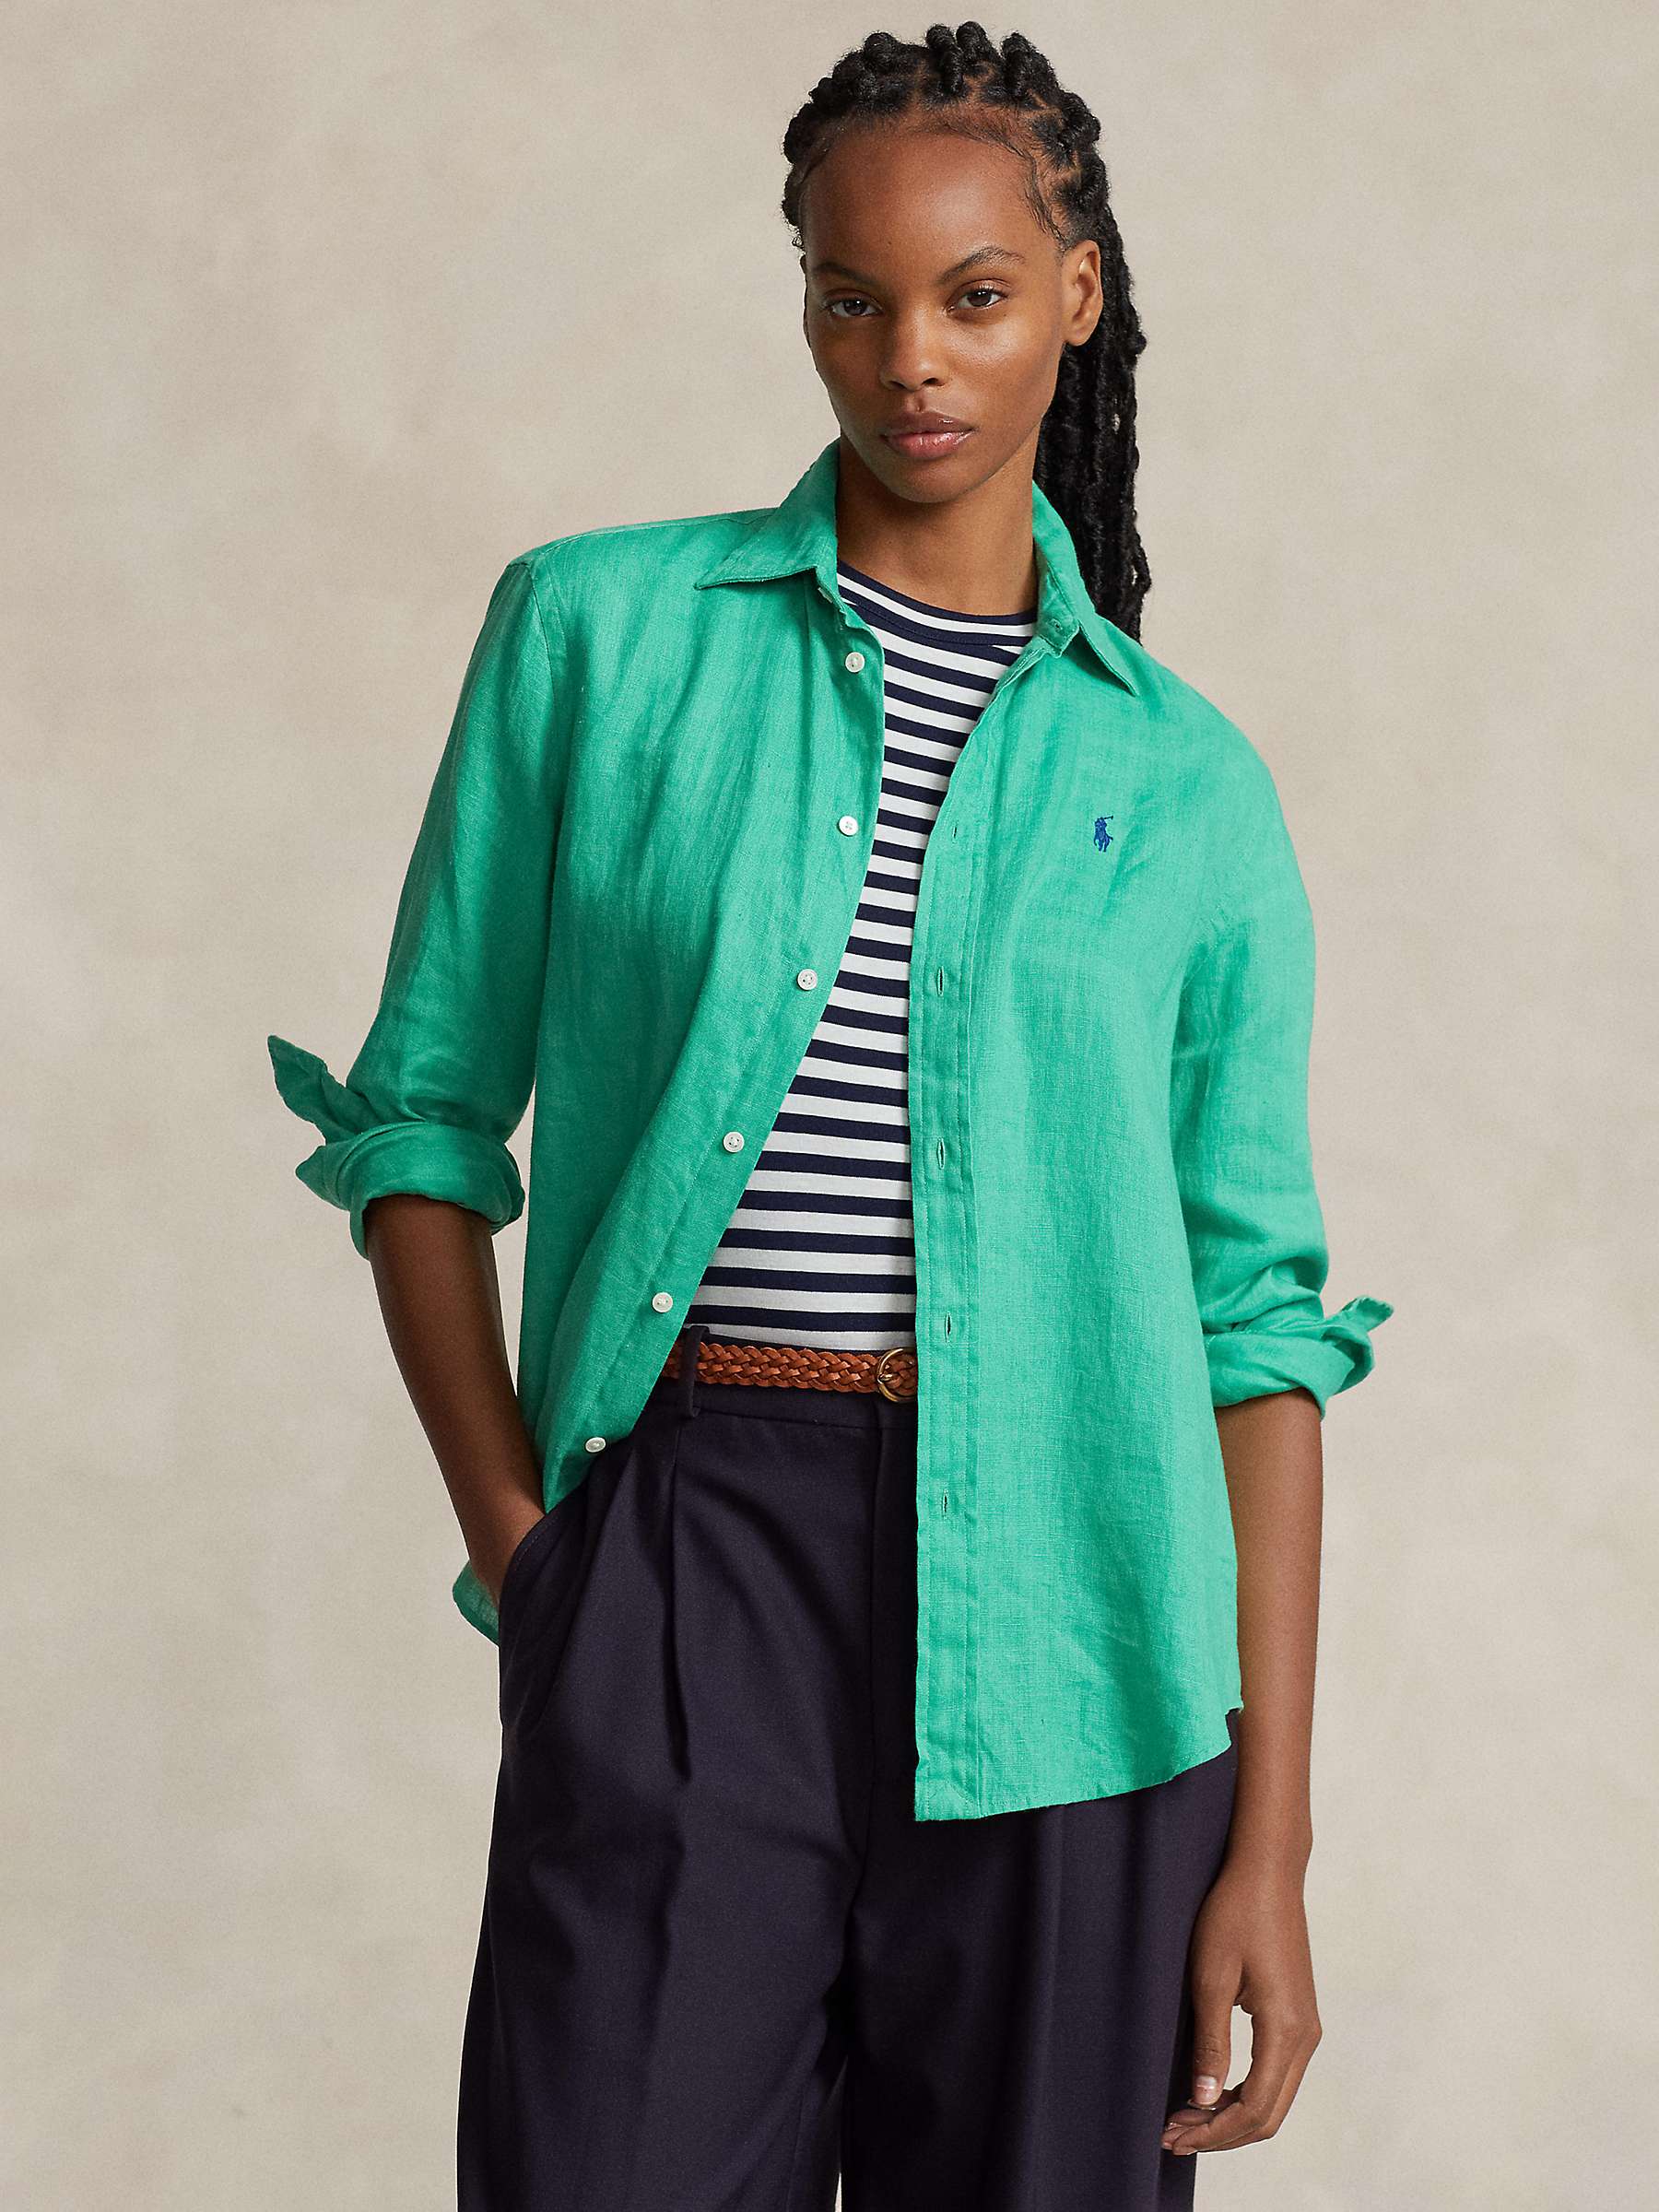 Buy Polo Ralph Lauren Linen Relaxed Fit Shirt Online at johnlewis.com